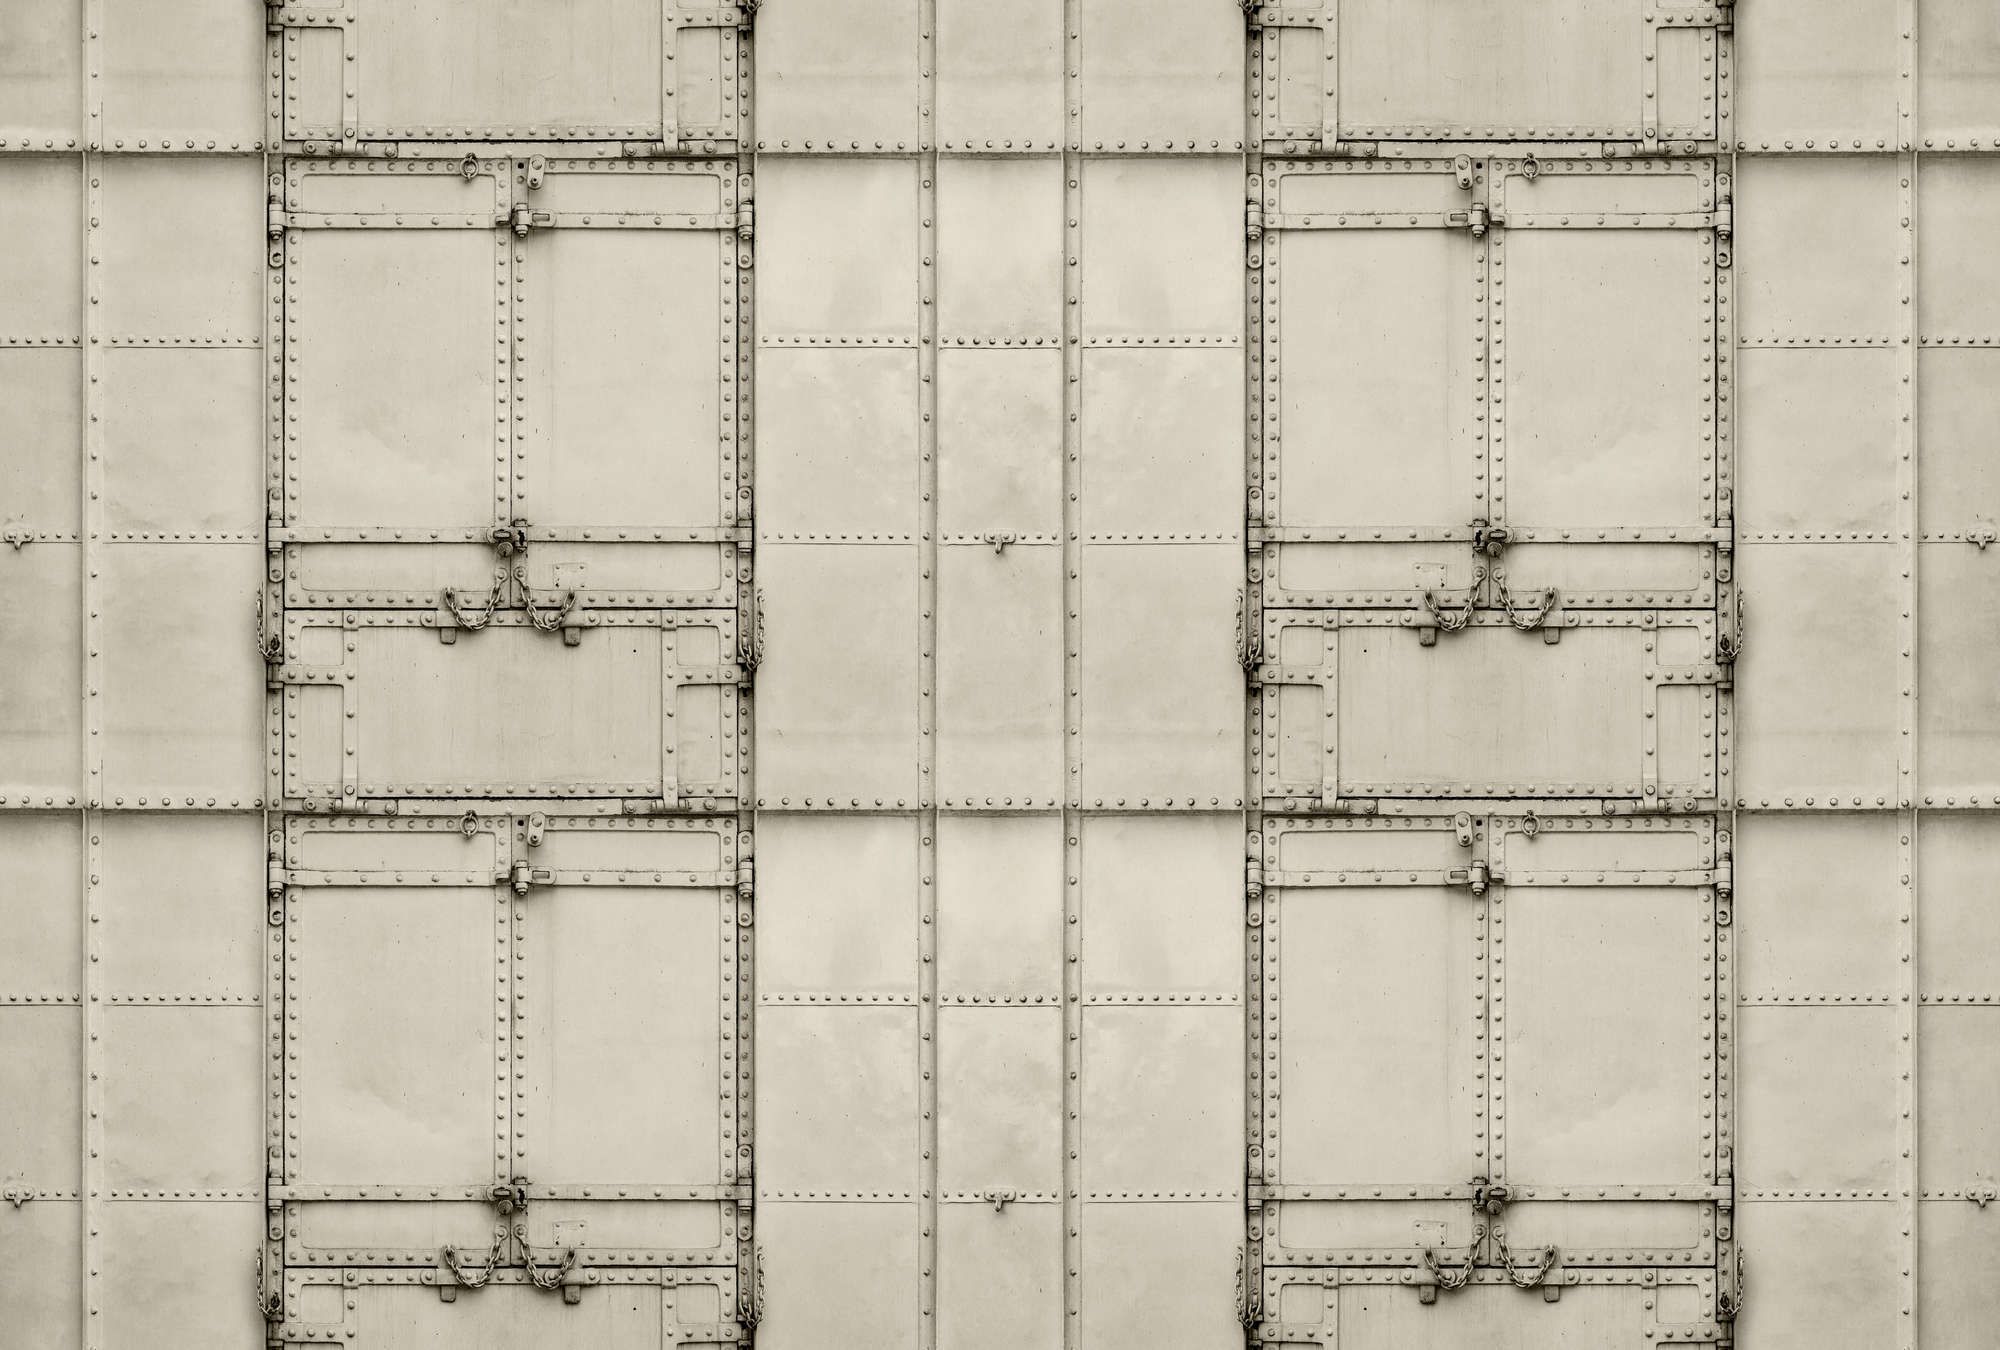             papier peint en papier panoramique »madurai« - design patchwork avec plaques métalliques avec rivets & chaînes - intissé lisse, légèrement nacré
        